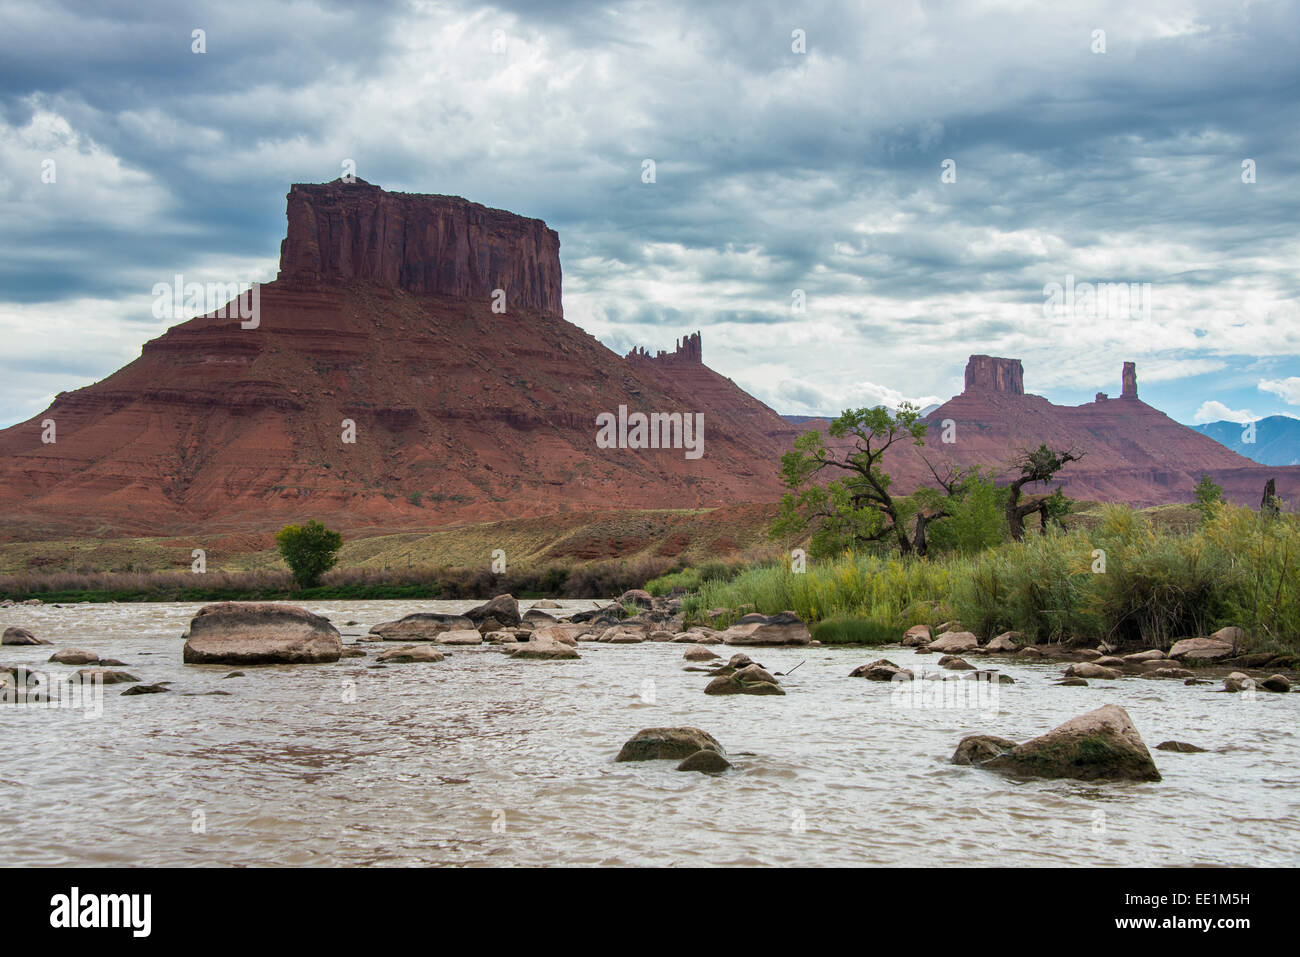 Le fleuve Colorado avec Castle Valley dans le fond, près de Moab, Utah, États-Unis d'Amérique, Amérique du Nord Banque D'Images